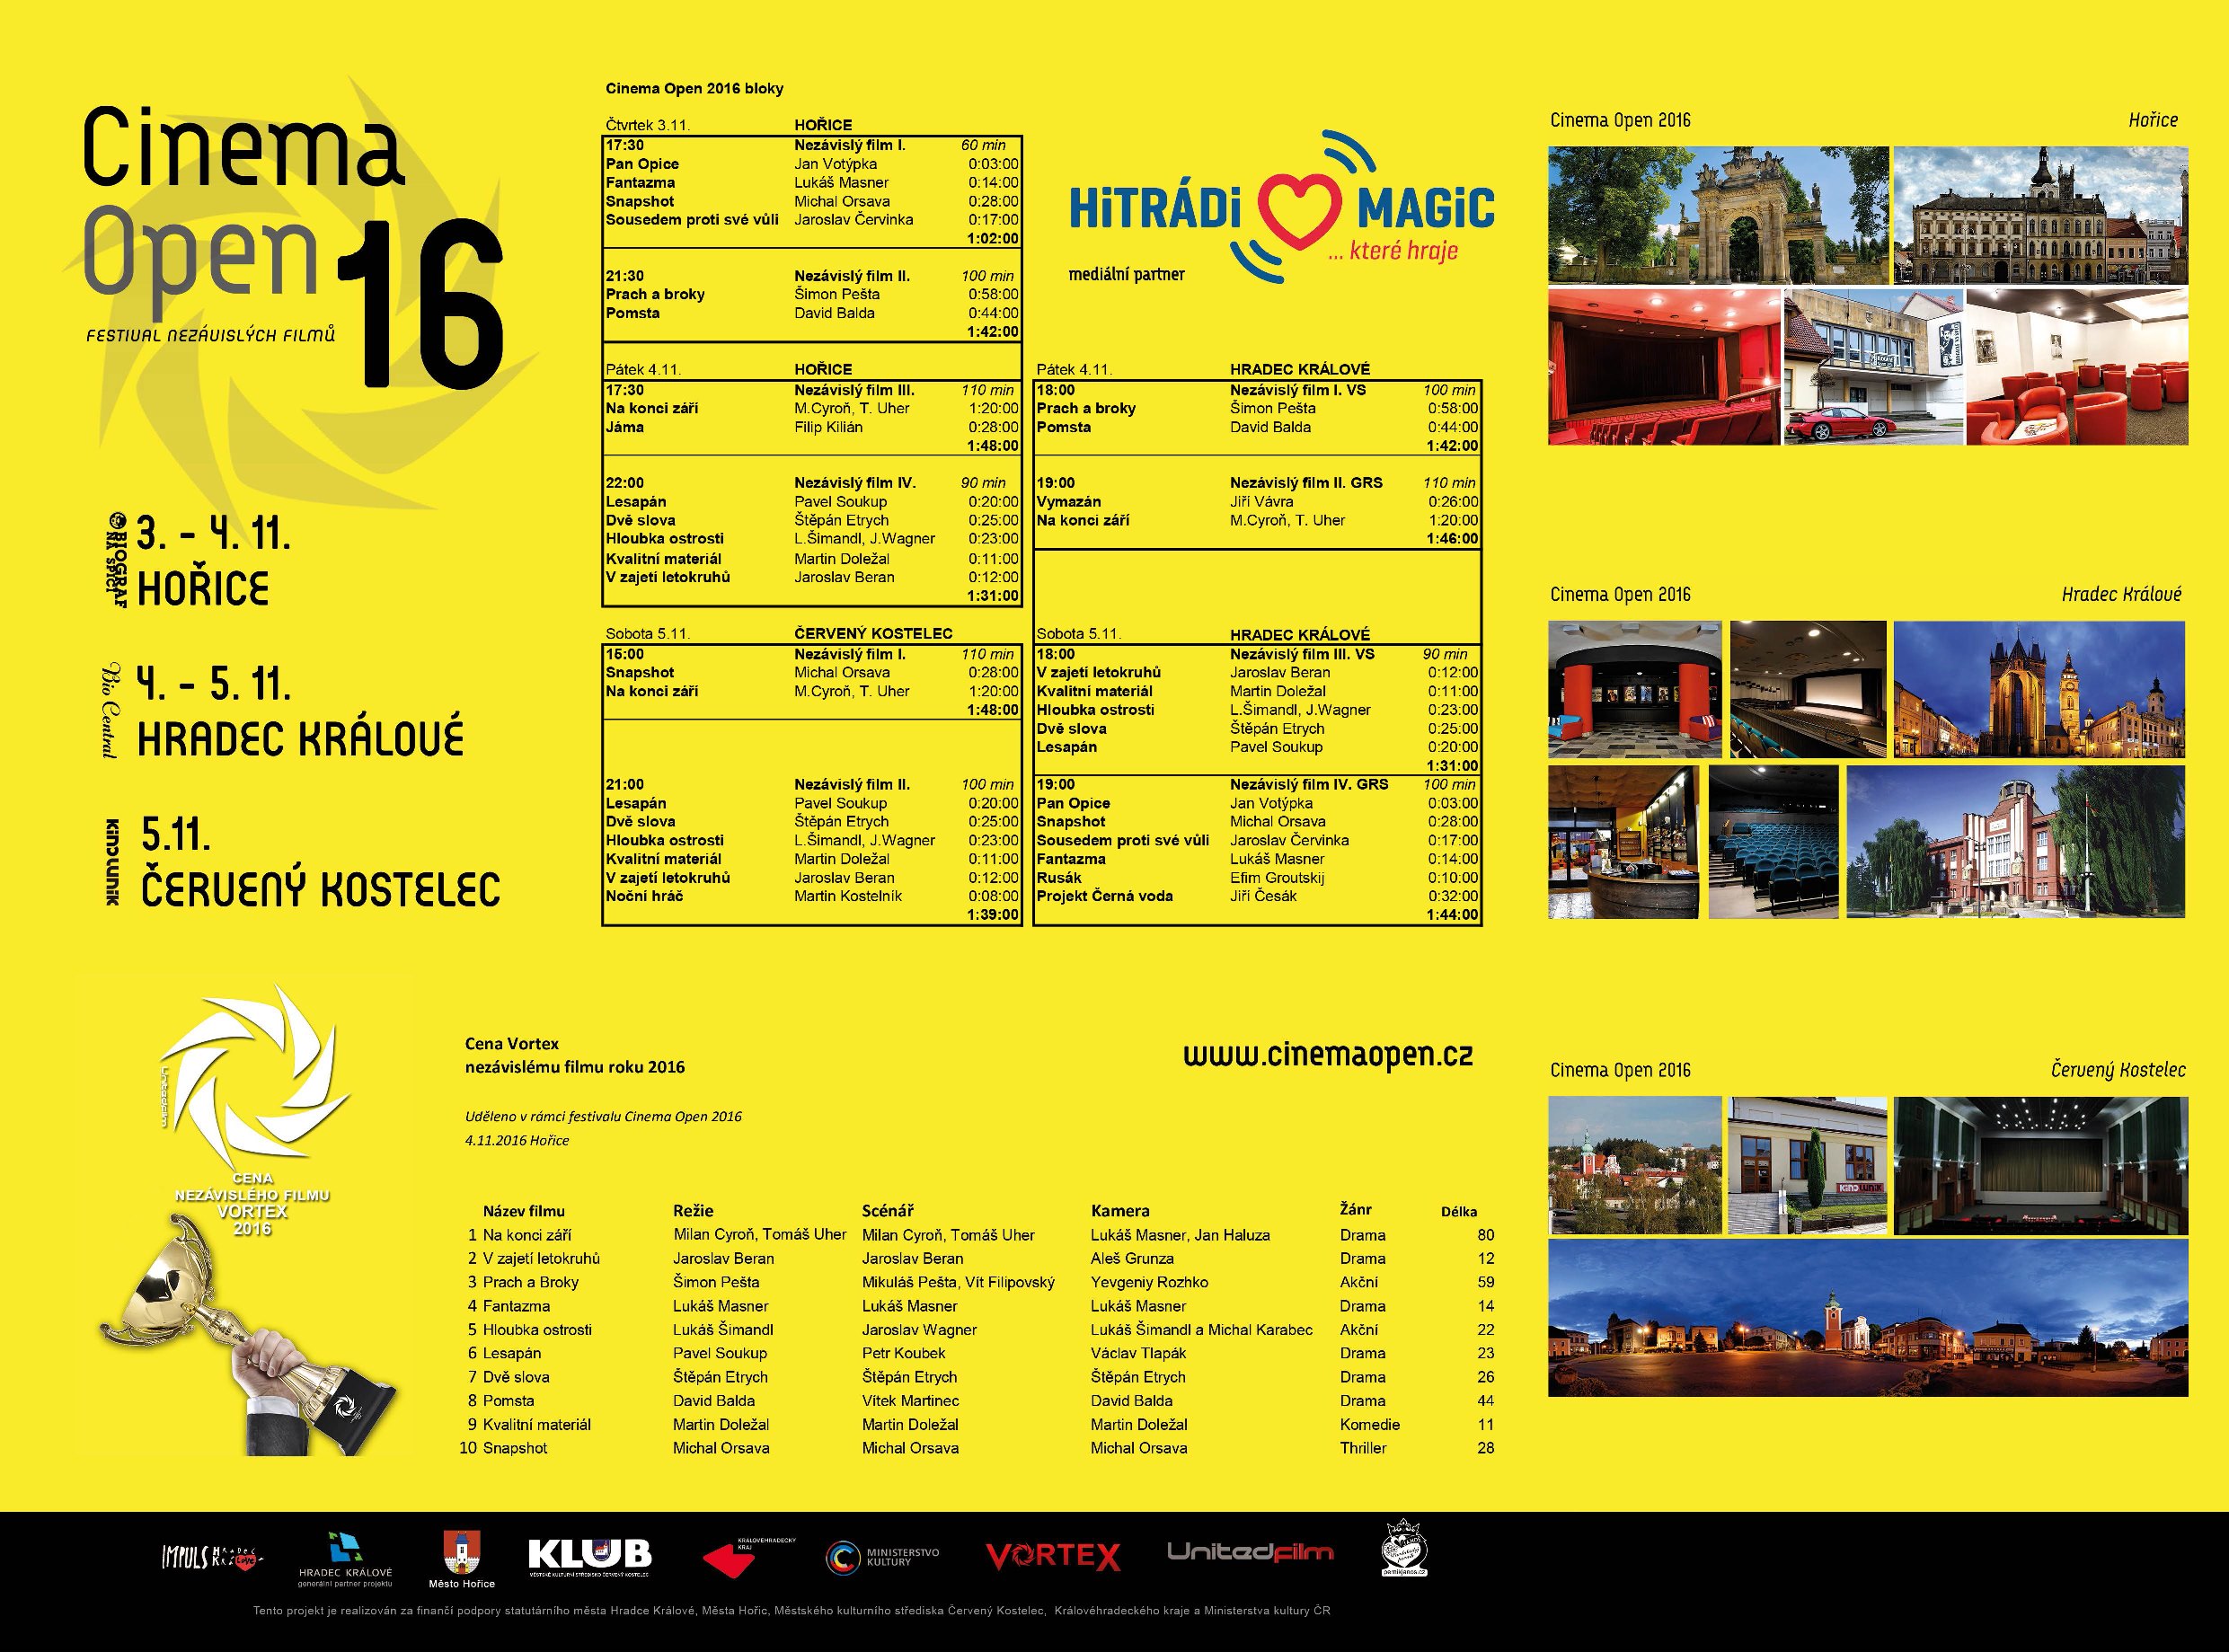 Tvrci pehled Cinema Open 2016